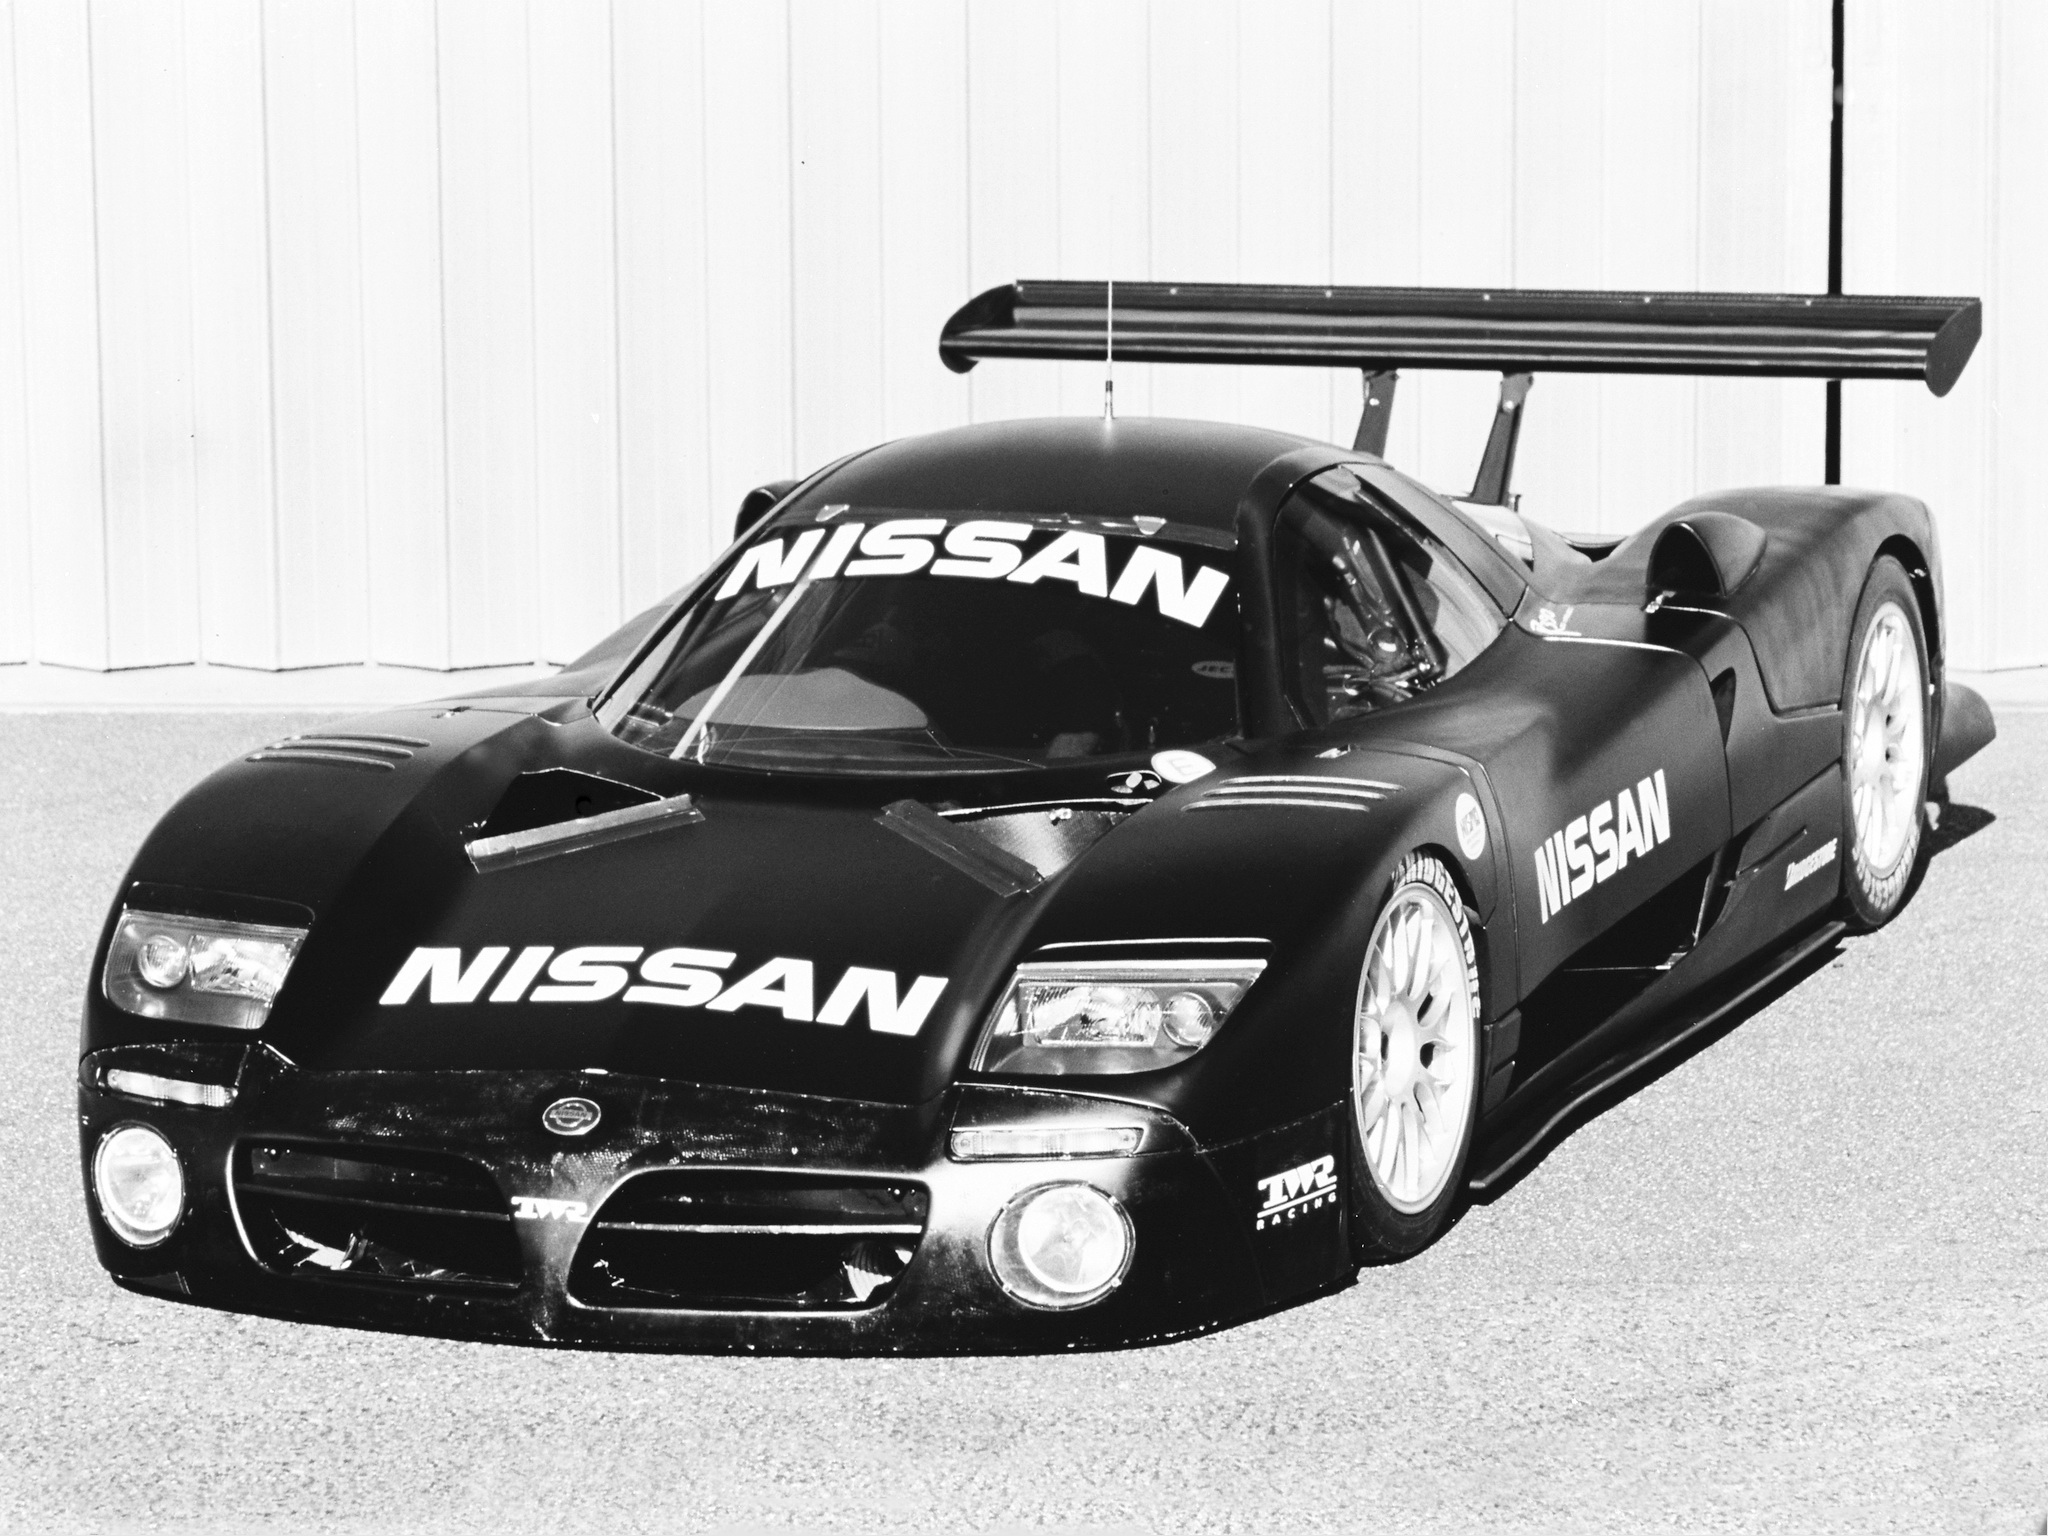 1997, Nissan, R390, Gt1, Race, Racing Wallpaper